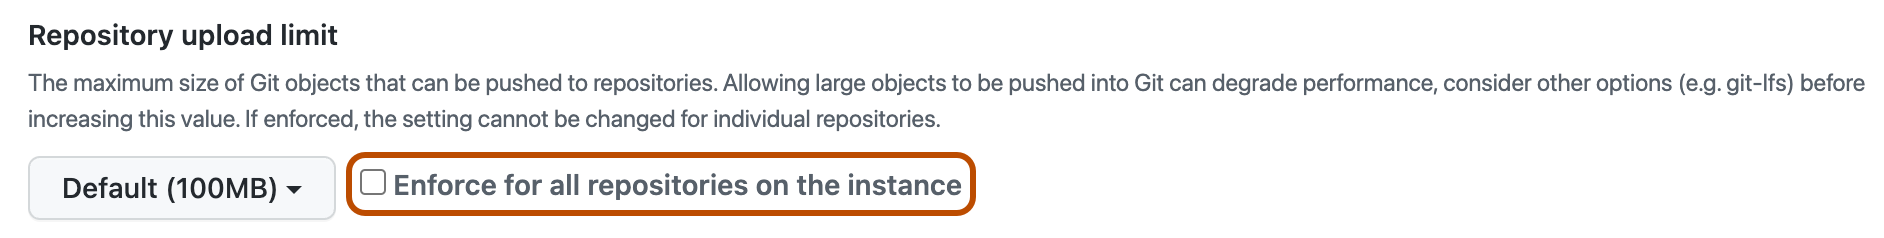 “存储库上传限制”策略部分的屏幕截图。 “对所有存储库强制实施”复选框以橙色轮廓突出显示。